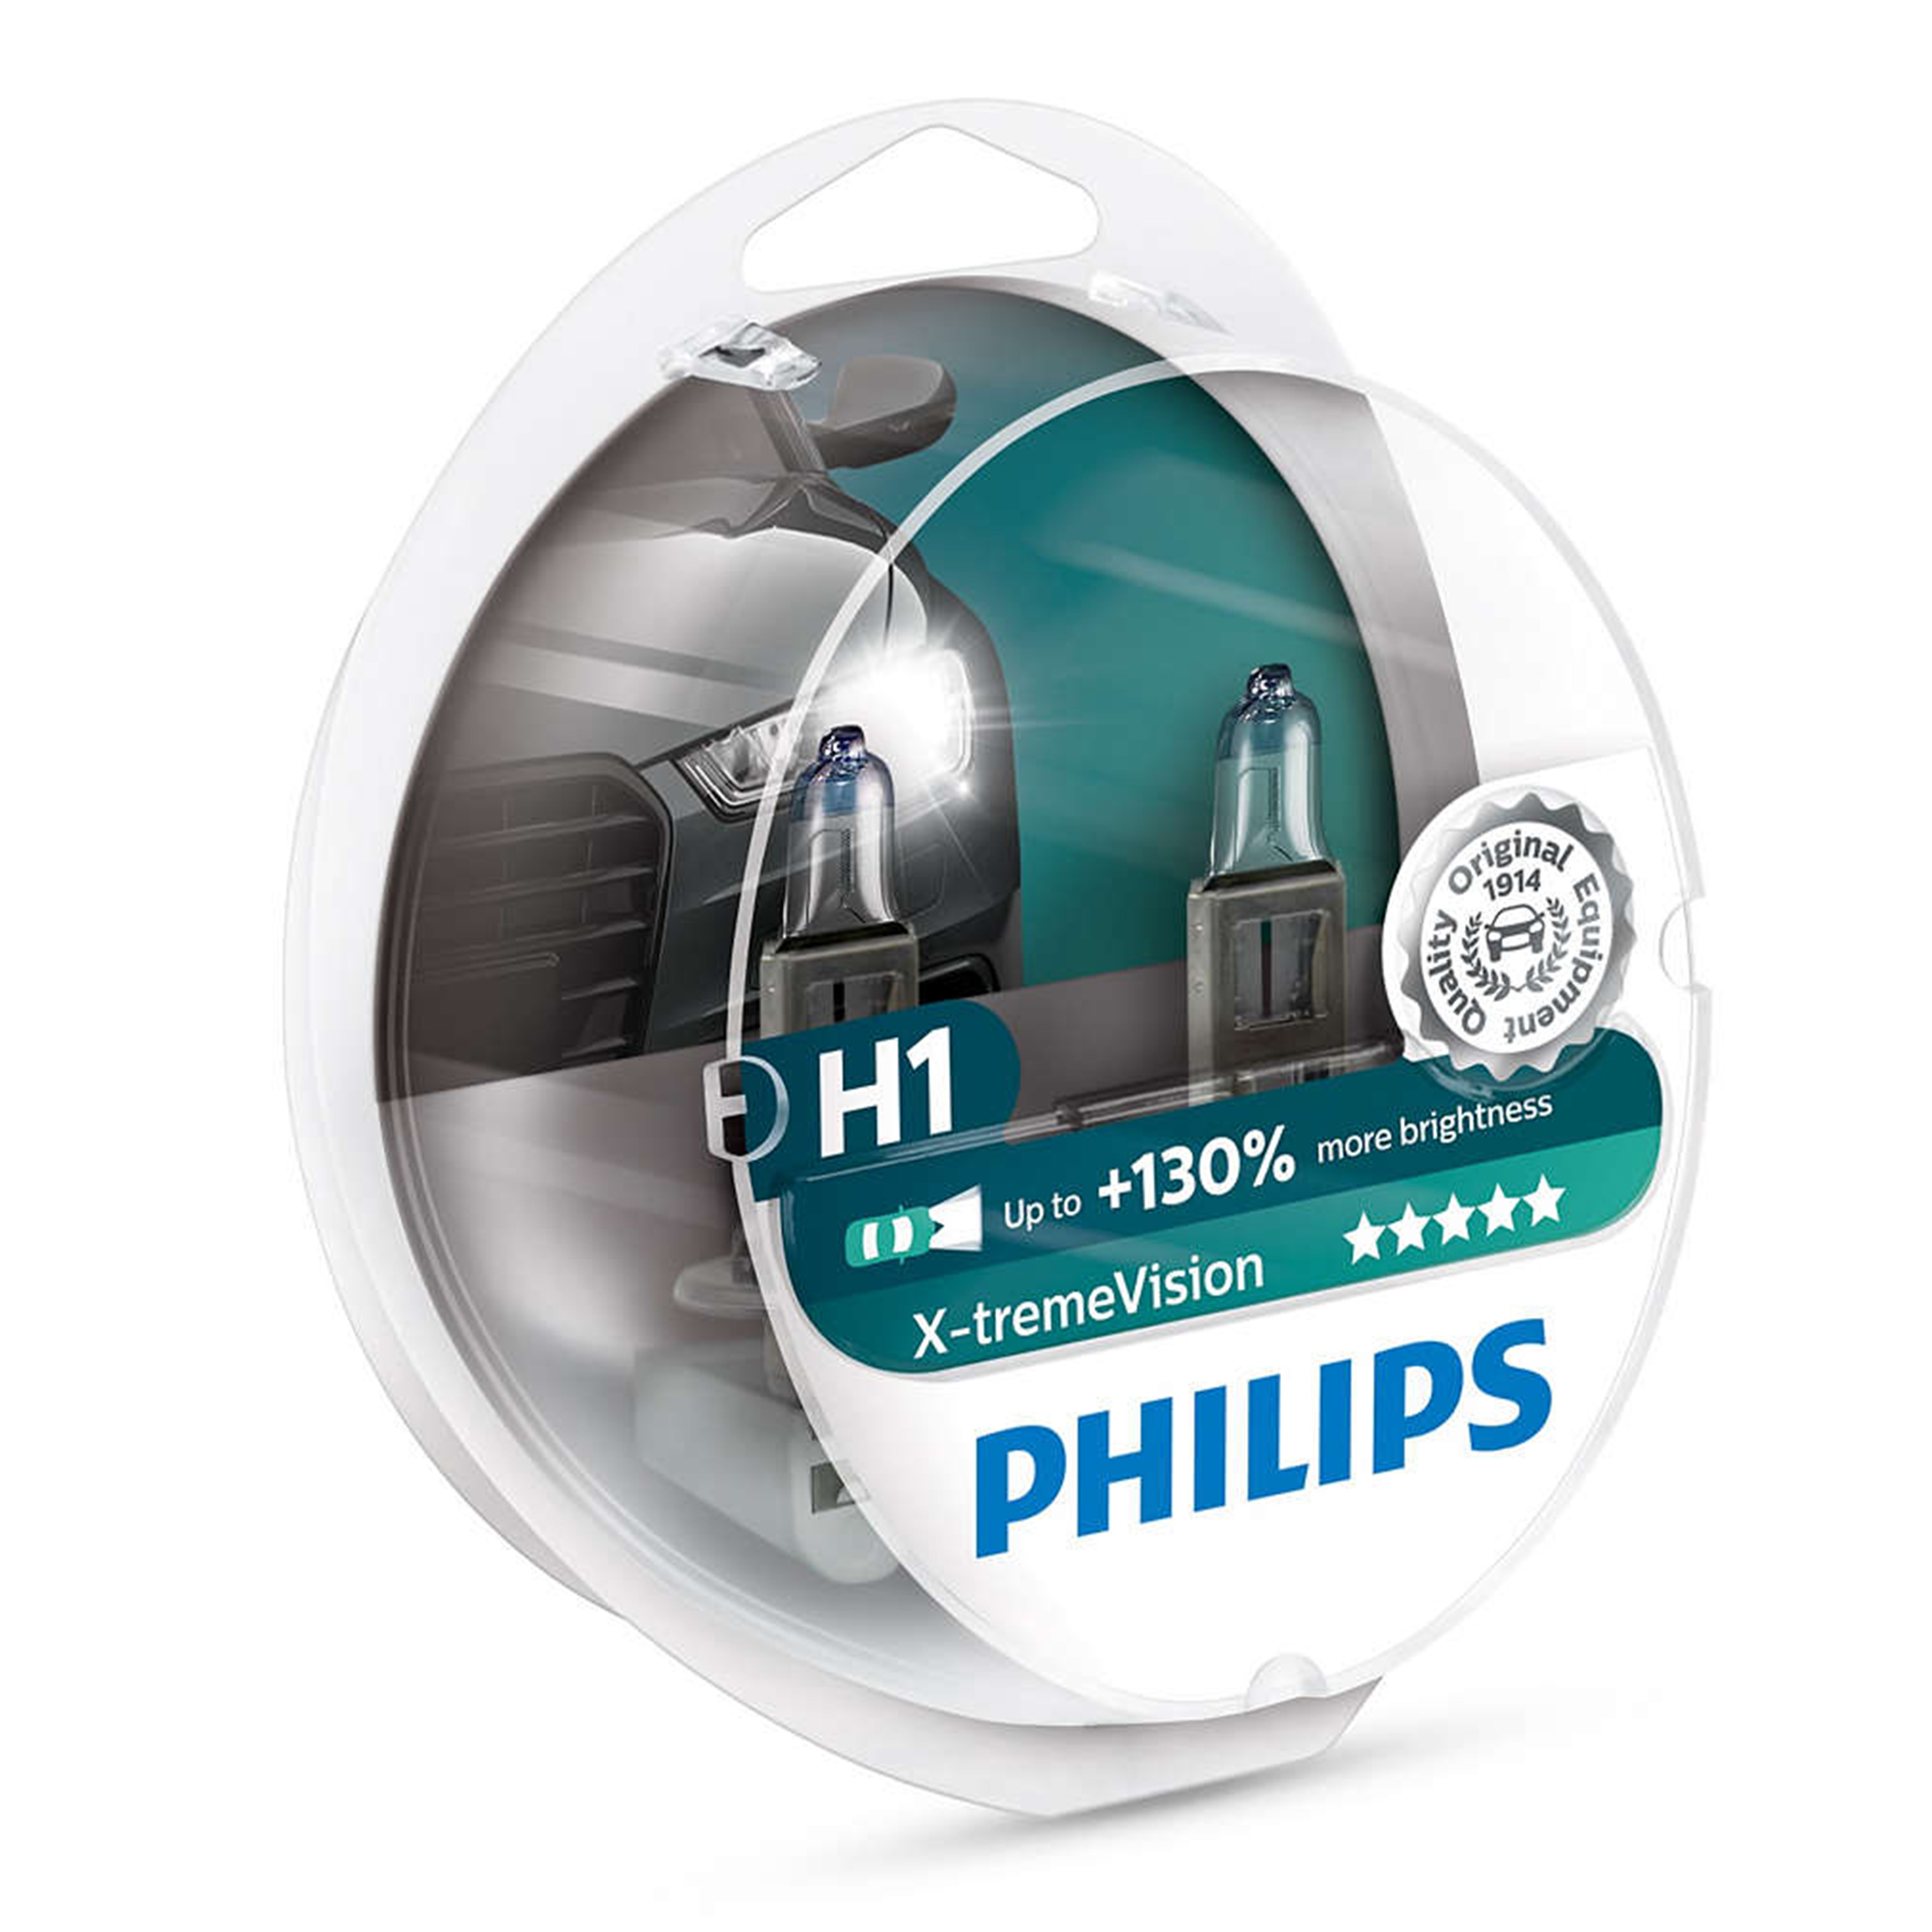 Philips vision купить. Филипс h7 +130. Philips x-treme Vision h7. Philips x-TREMEVISION +130% h4. Лампа h4 Philips Xtreme Vision +130.